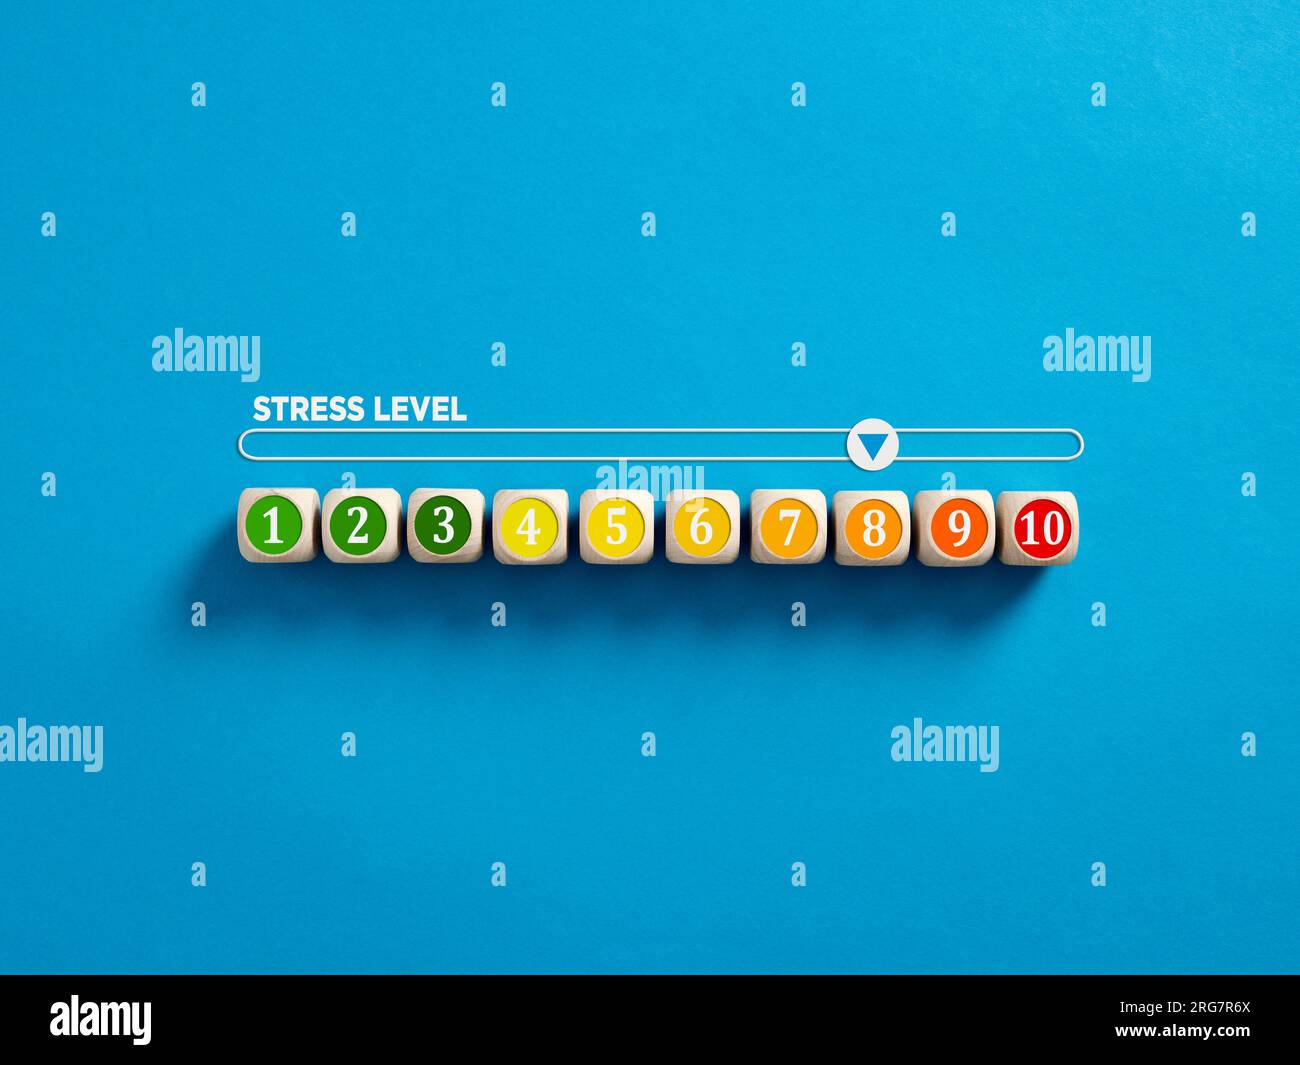 Indikator zur Messung des Stressniveaus. Hoher Stresslevel. Stresspegel-Nummern auf Holzwürfeln mit einem Stressmesser auf blauem Hintergrund. Stockfoto